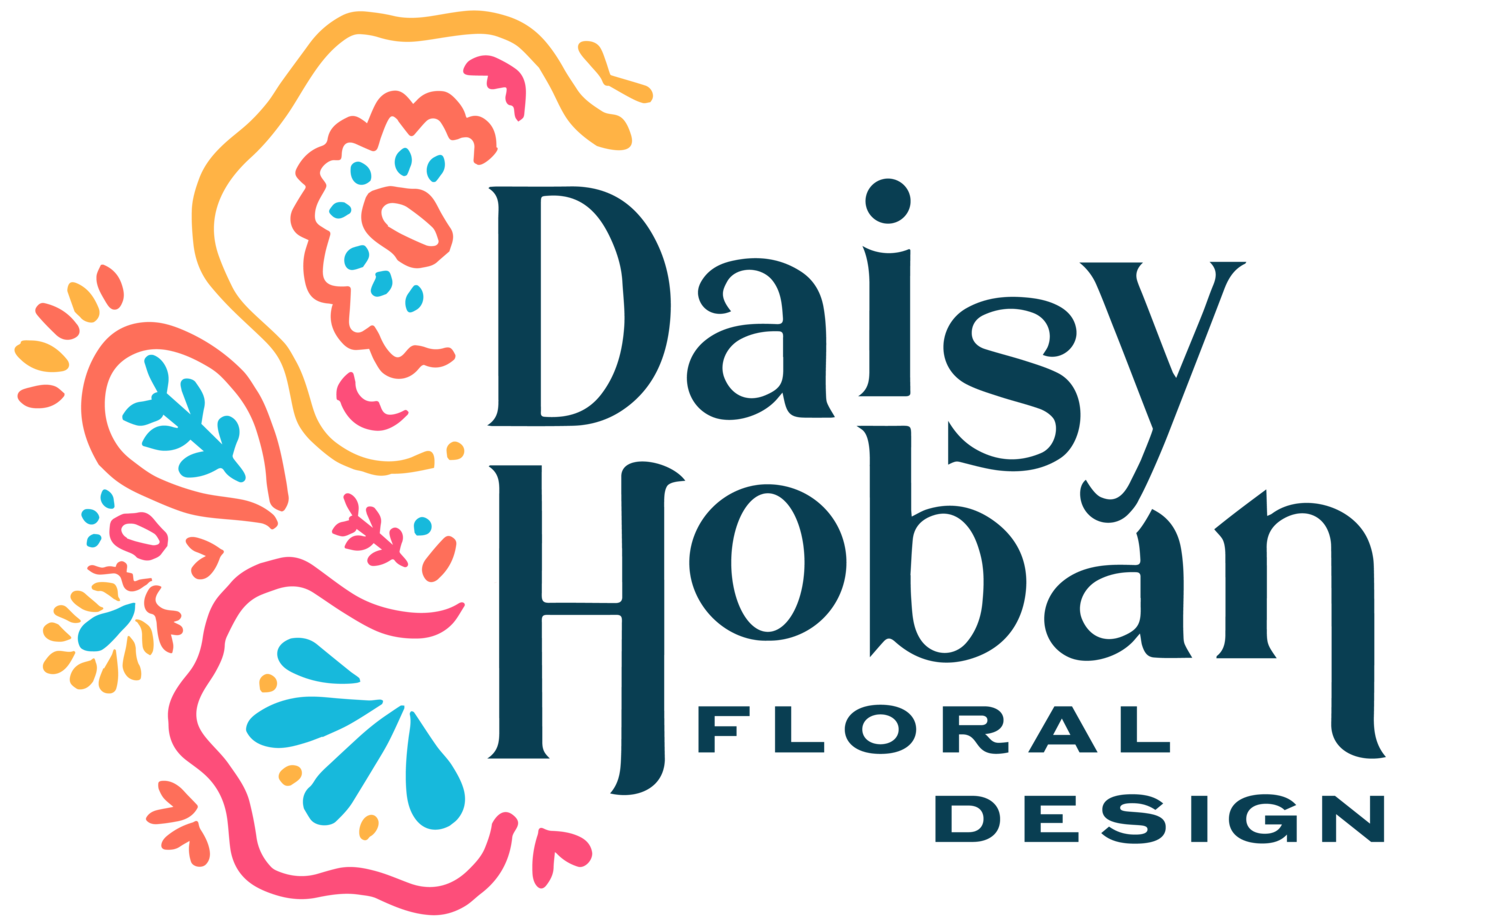 Daisy Hoban Floral